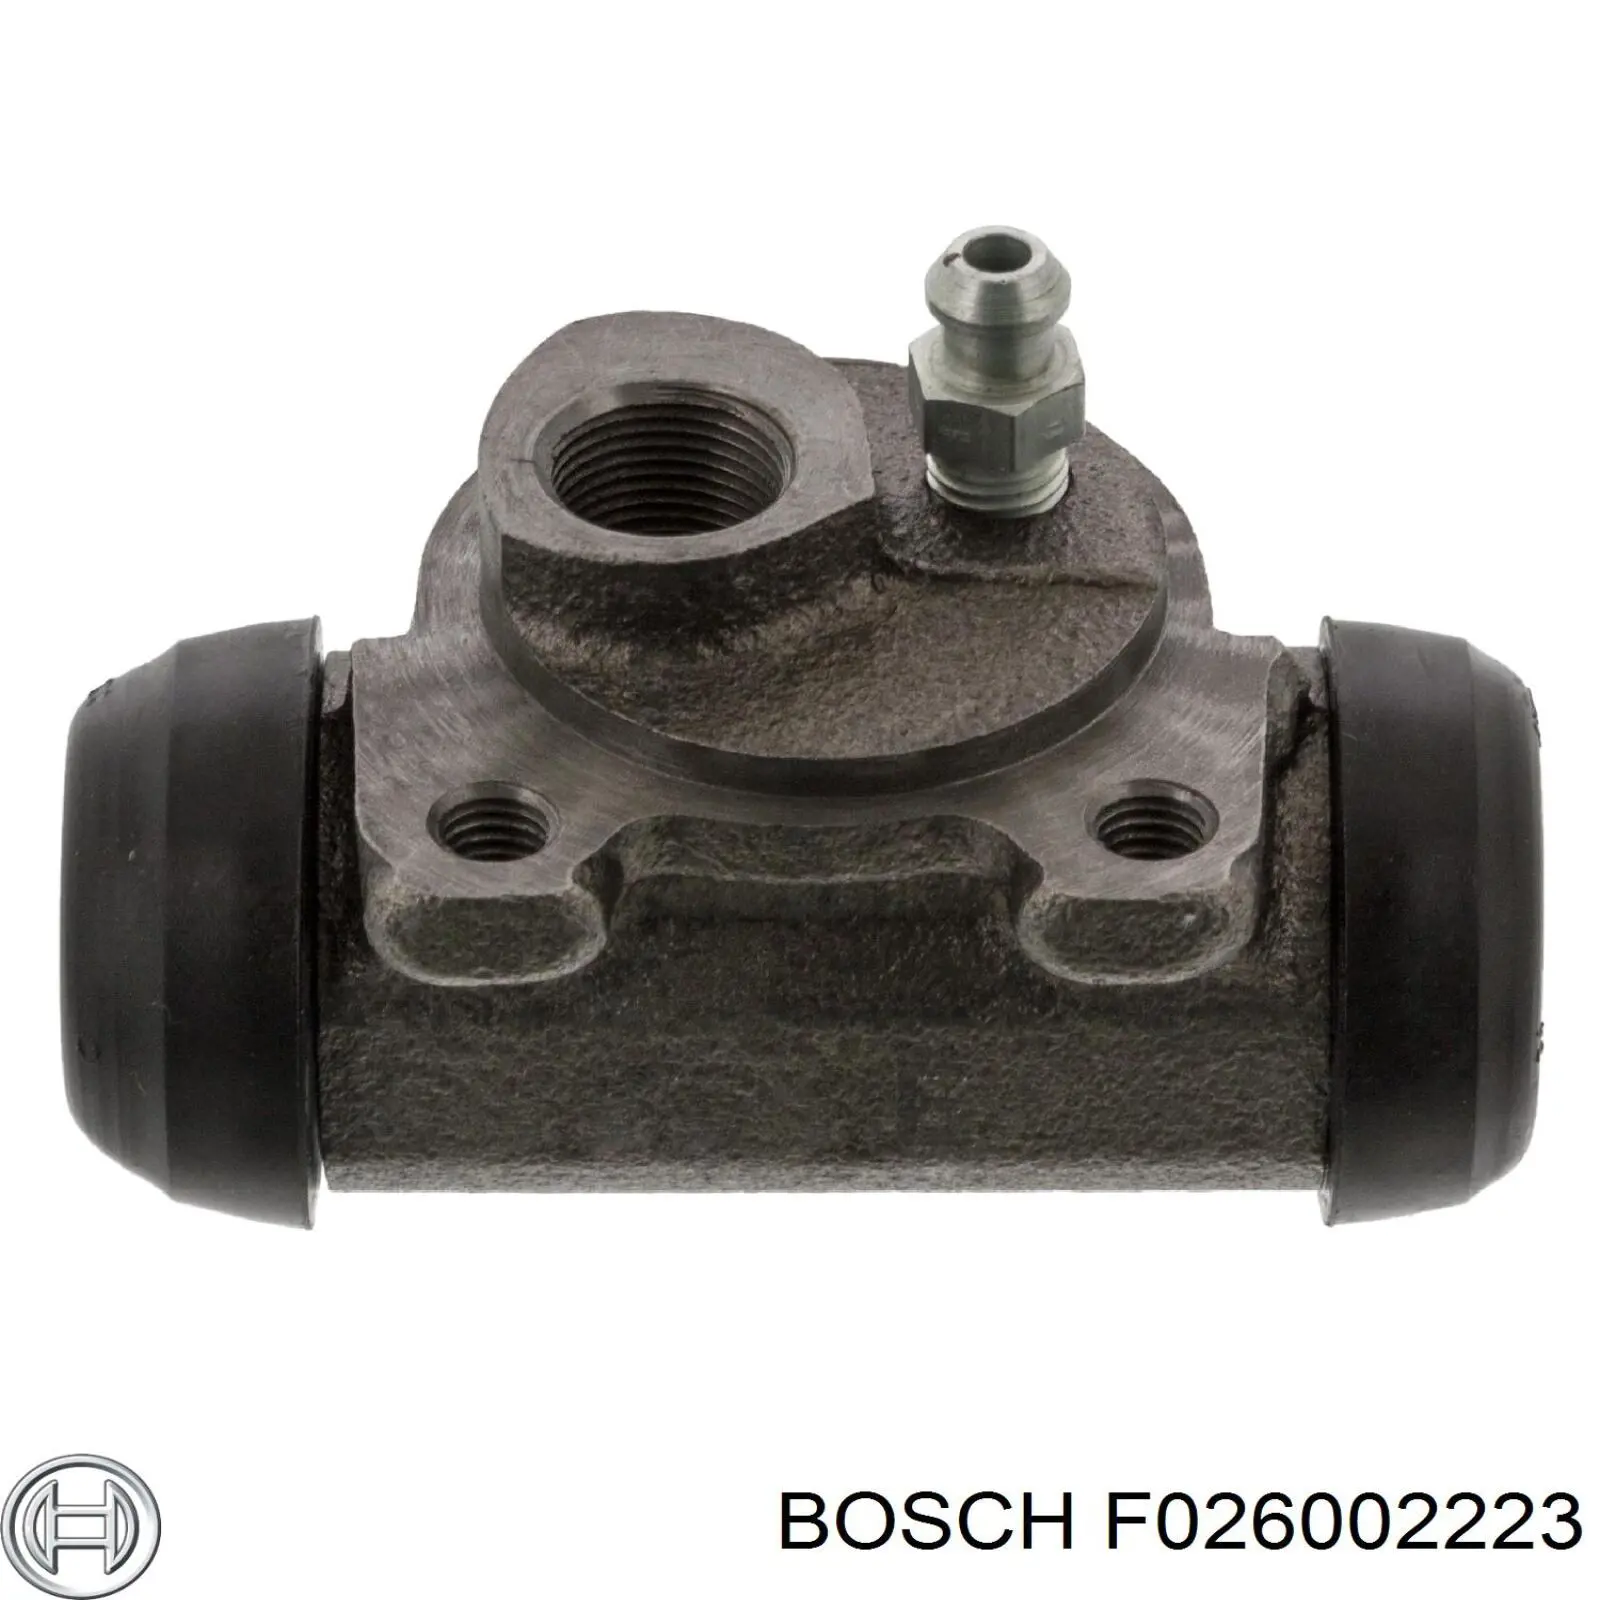 F026002223 Bosch cilindro de freno de rueda trasero